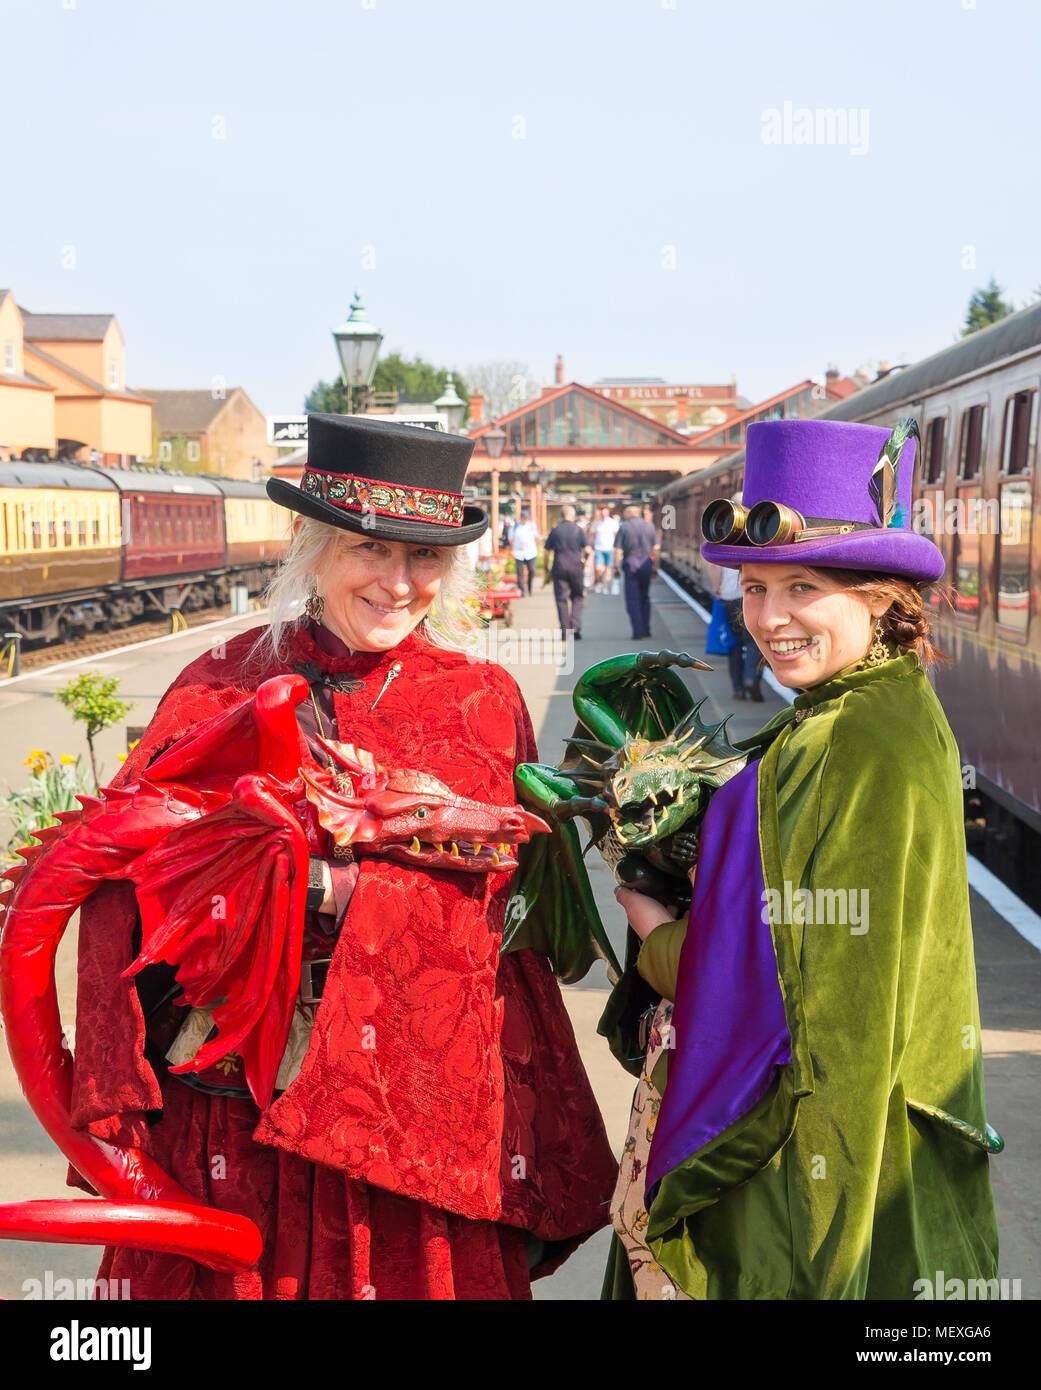 Ritratto di due femmine sorridente in fancy dress costume con hand-held, vita-come dragon burattini sulla piattaforma Sun, a SVR Kidderminster stazione. Foto Stock